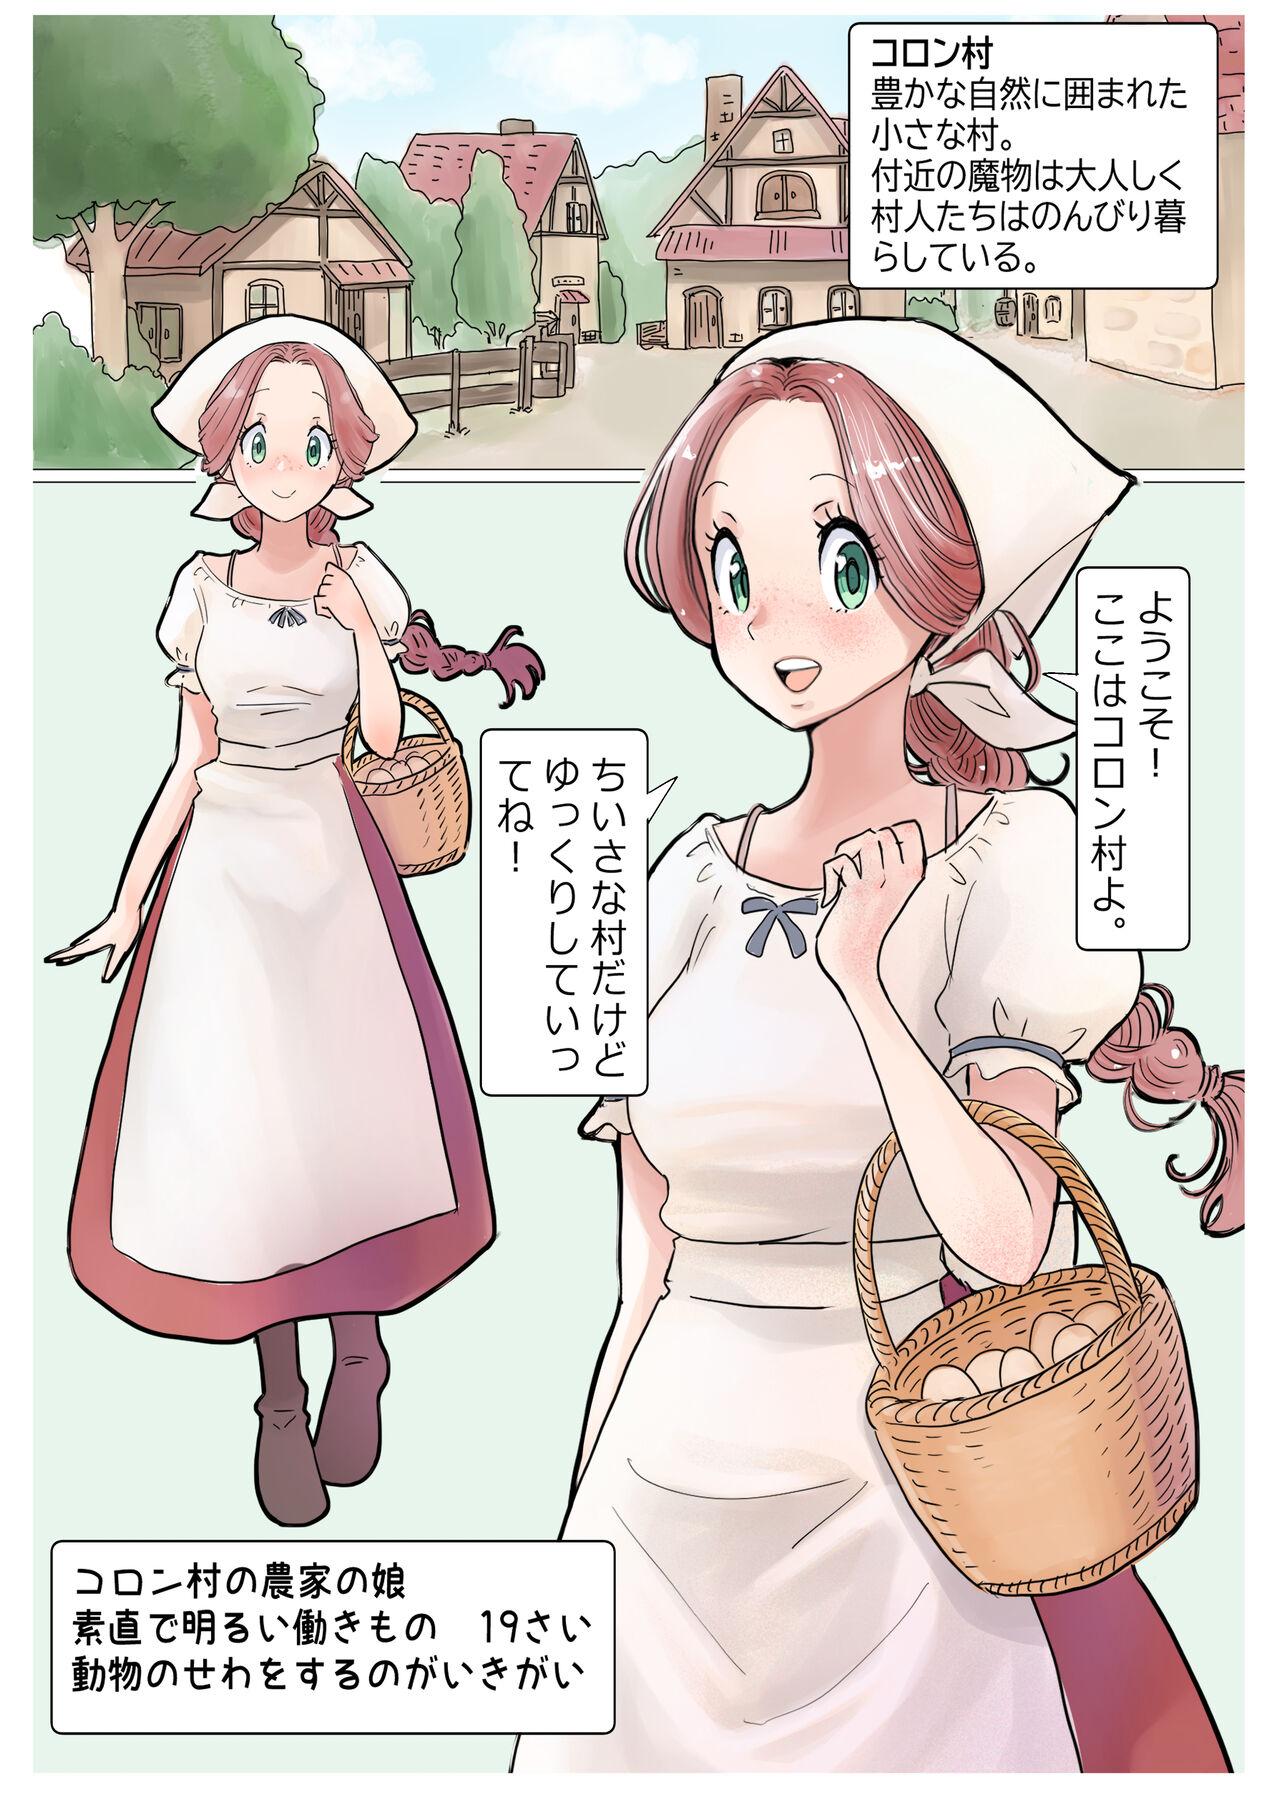 [tsubame] RPG girls ❤︎ [NPC kan no shou] 1 3